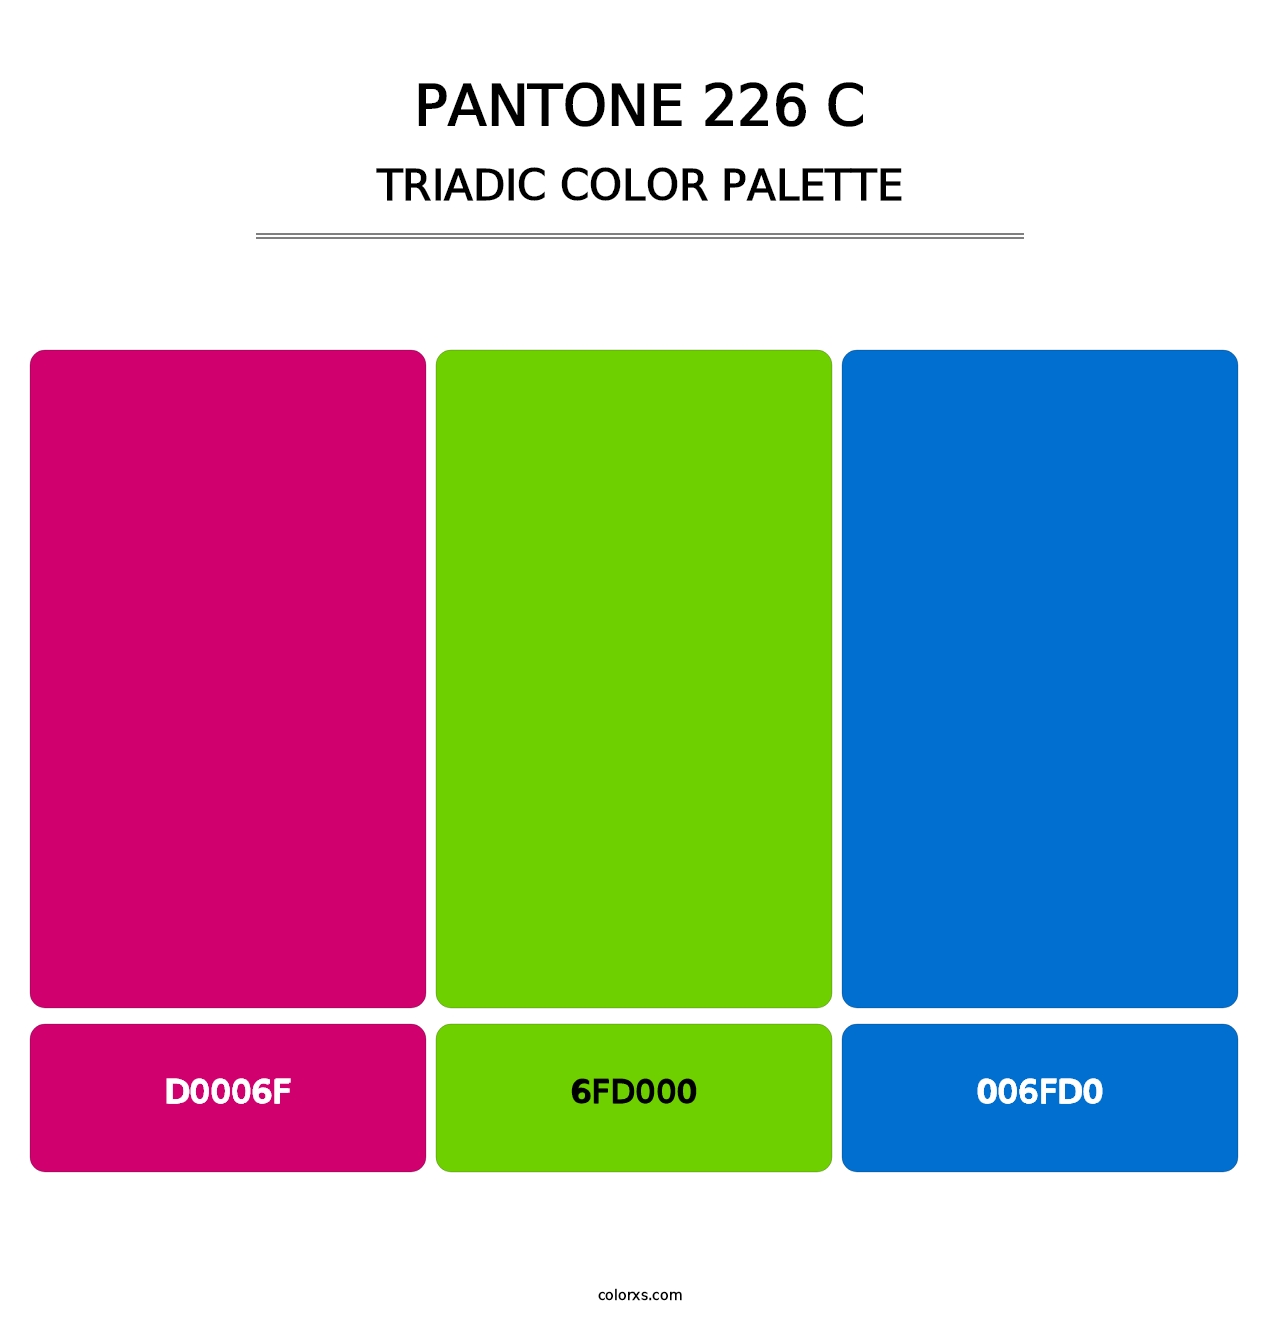 PANTONE 226 C - Triadic Color Palette